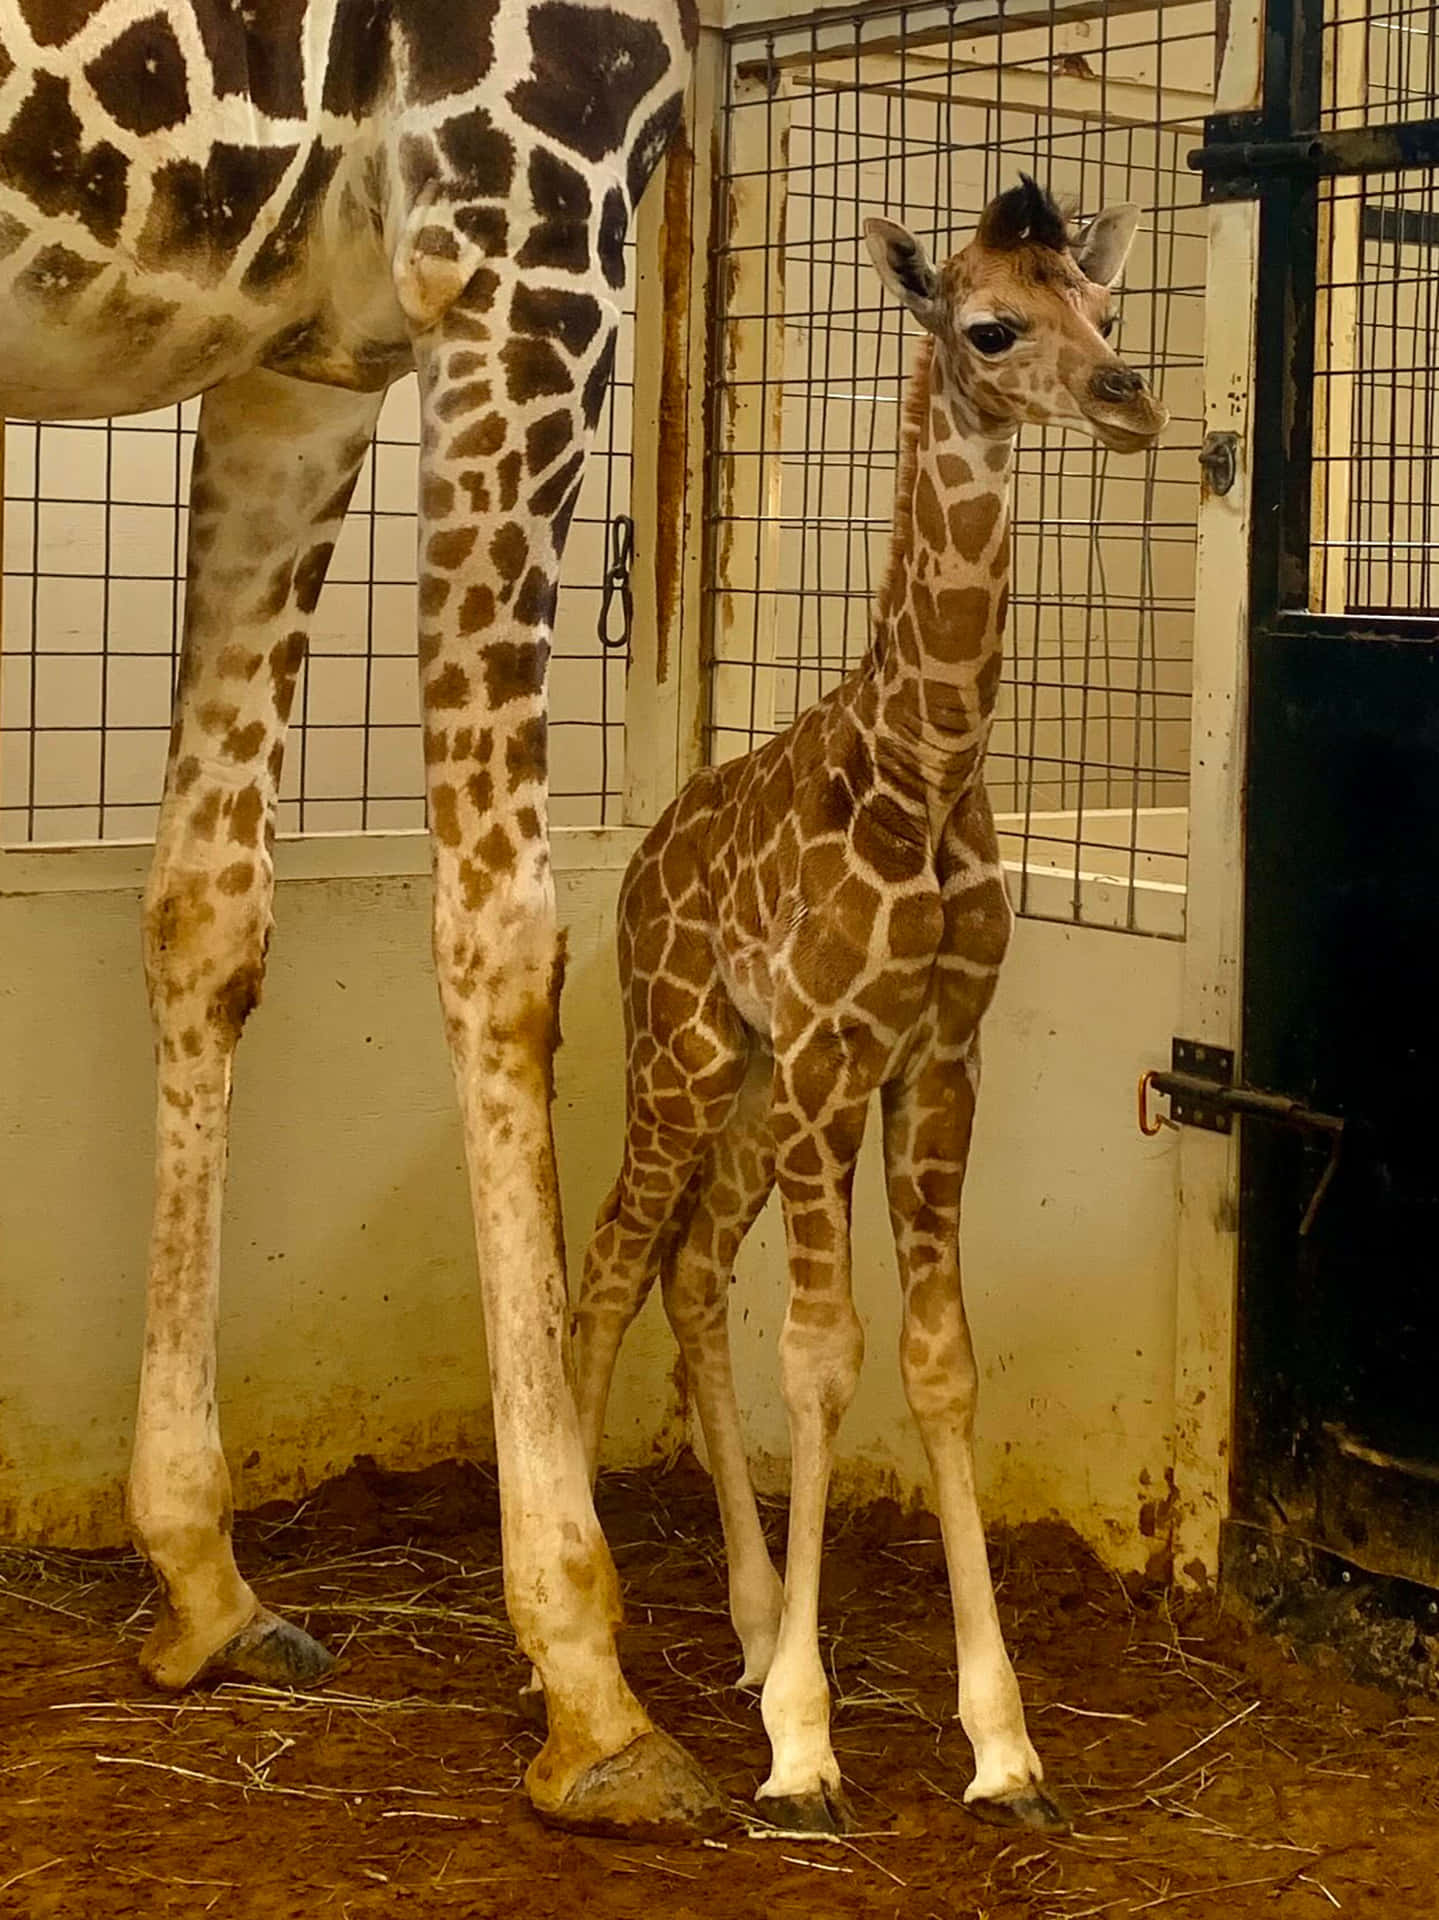 An Adorable Baby Giraffe